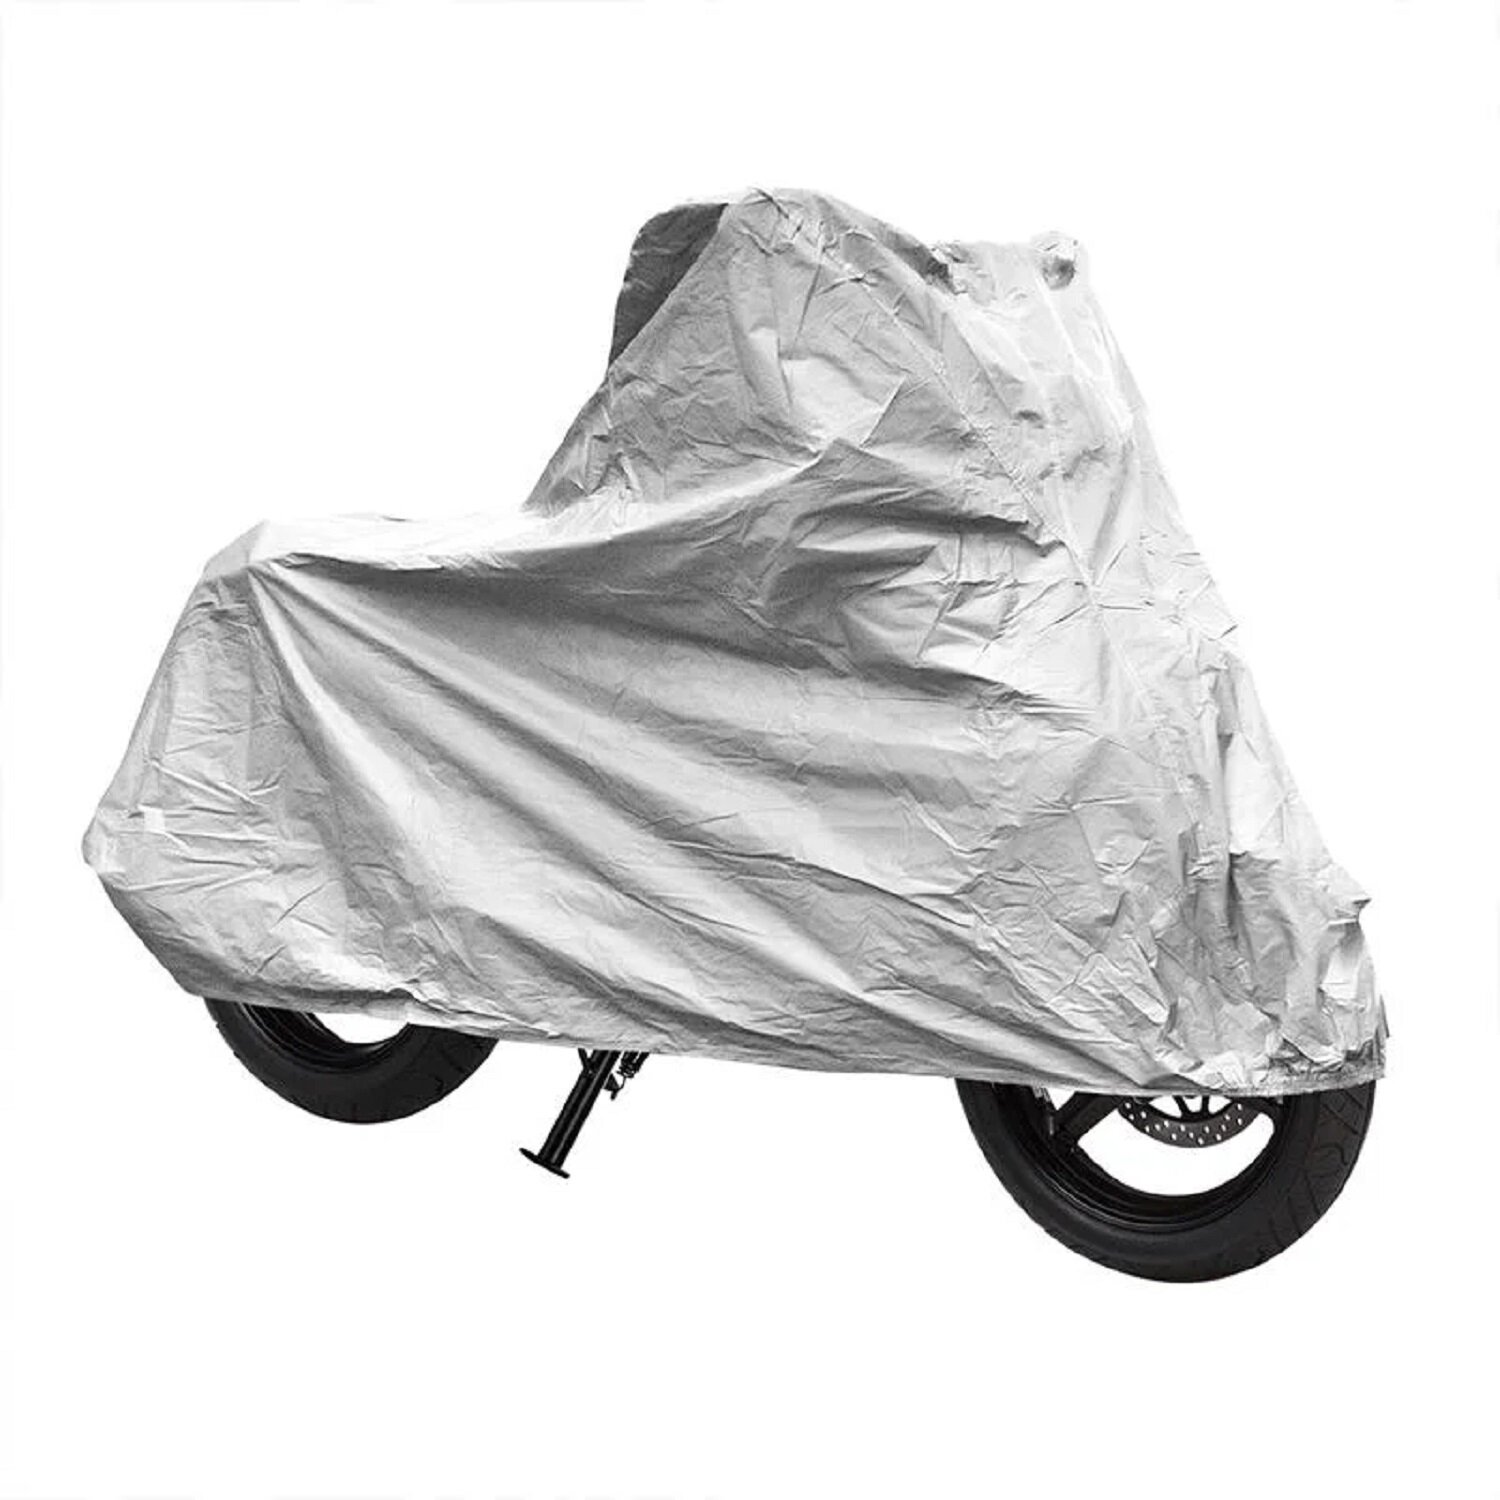 Motorrad Schutzhülle Rollerabdeckung 246x104x127 Wasserdicht Roller  Abdeckung - , 12,99 €